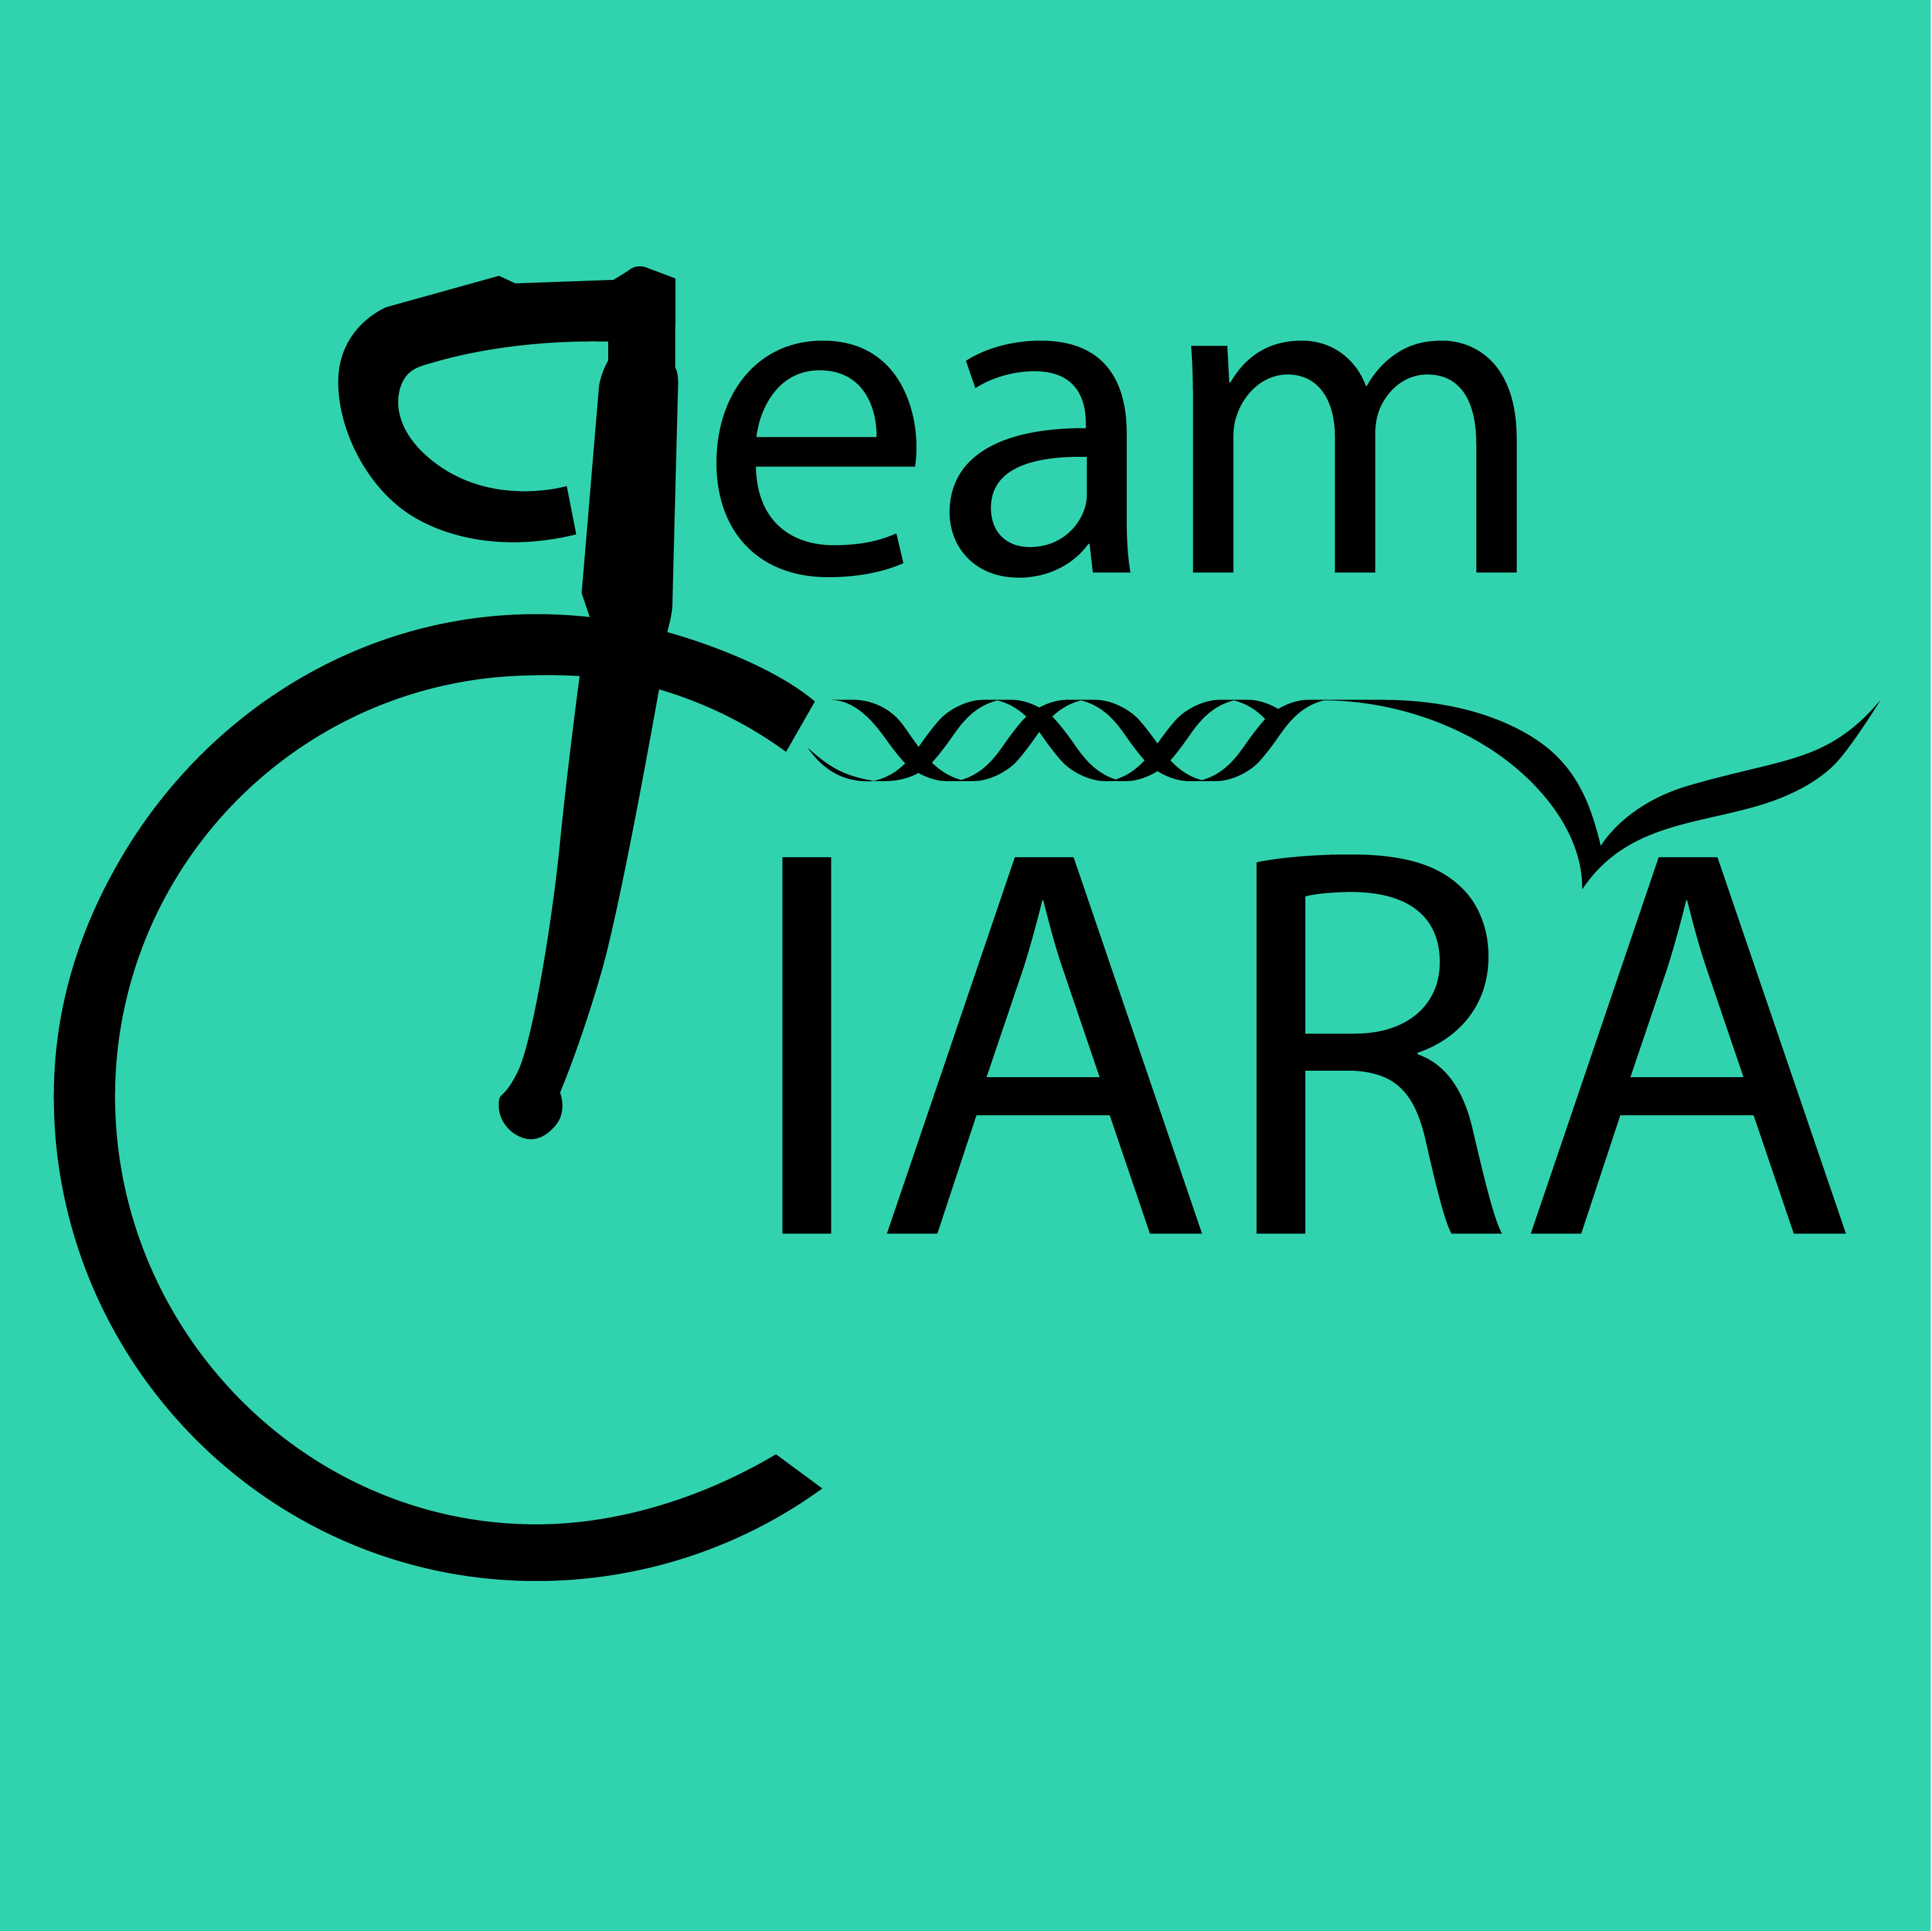 Club Image for TEAM CIARA CYCLING